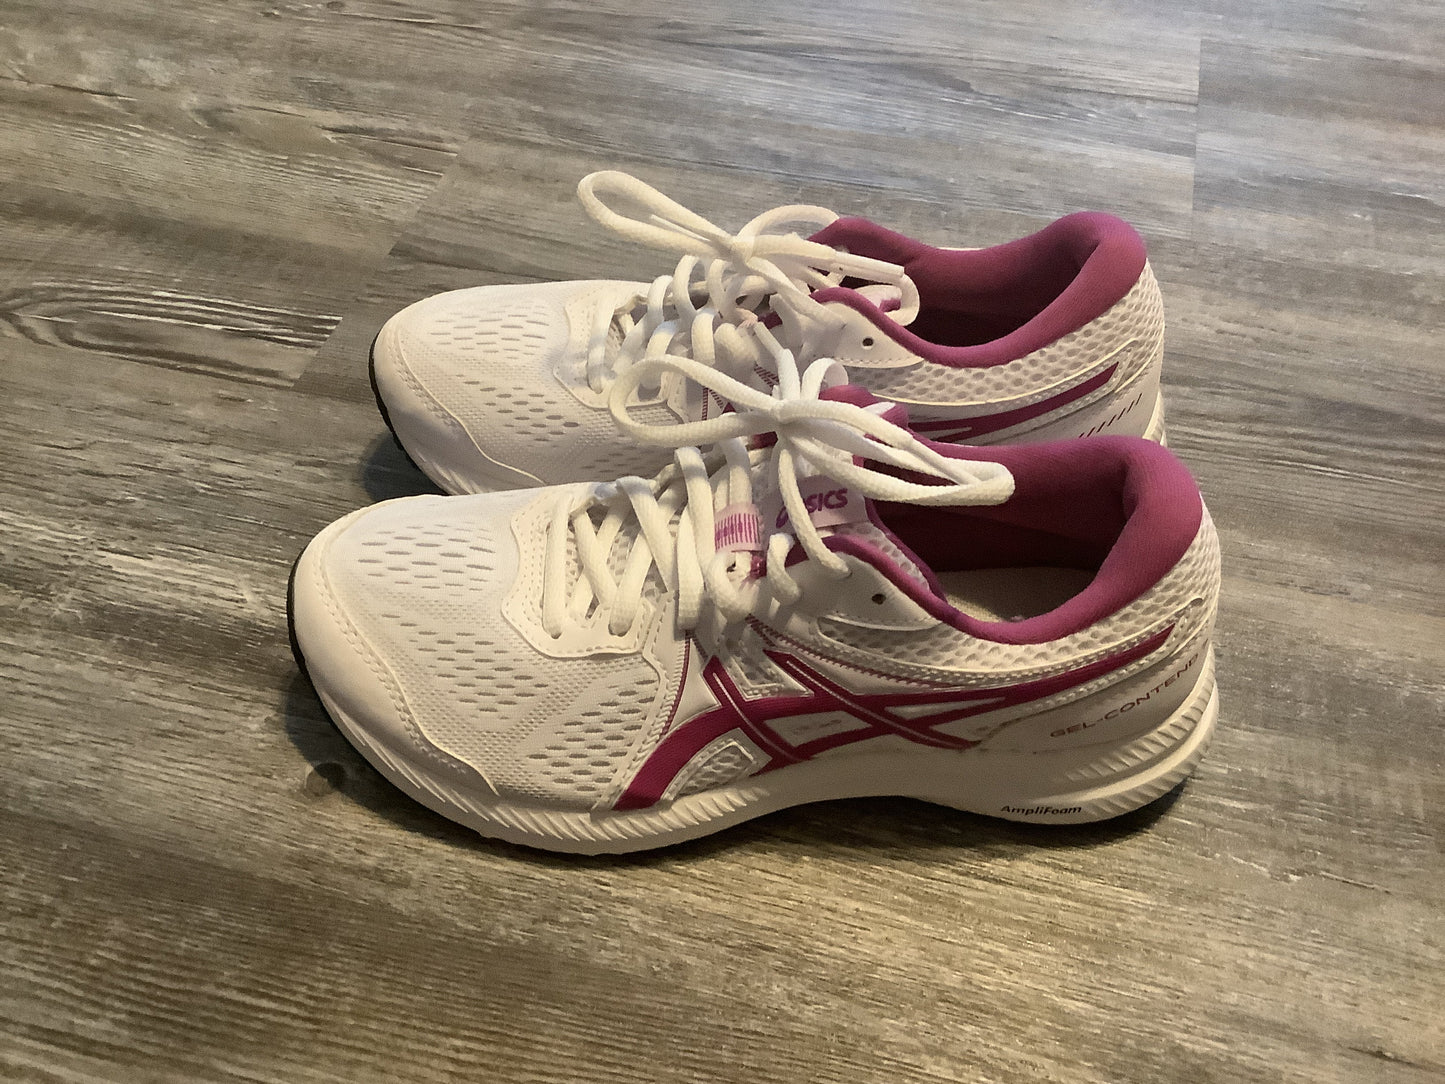 Purple & White Shoes Athletic Asics, Size 6.5